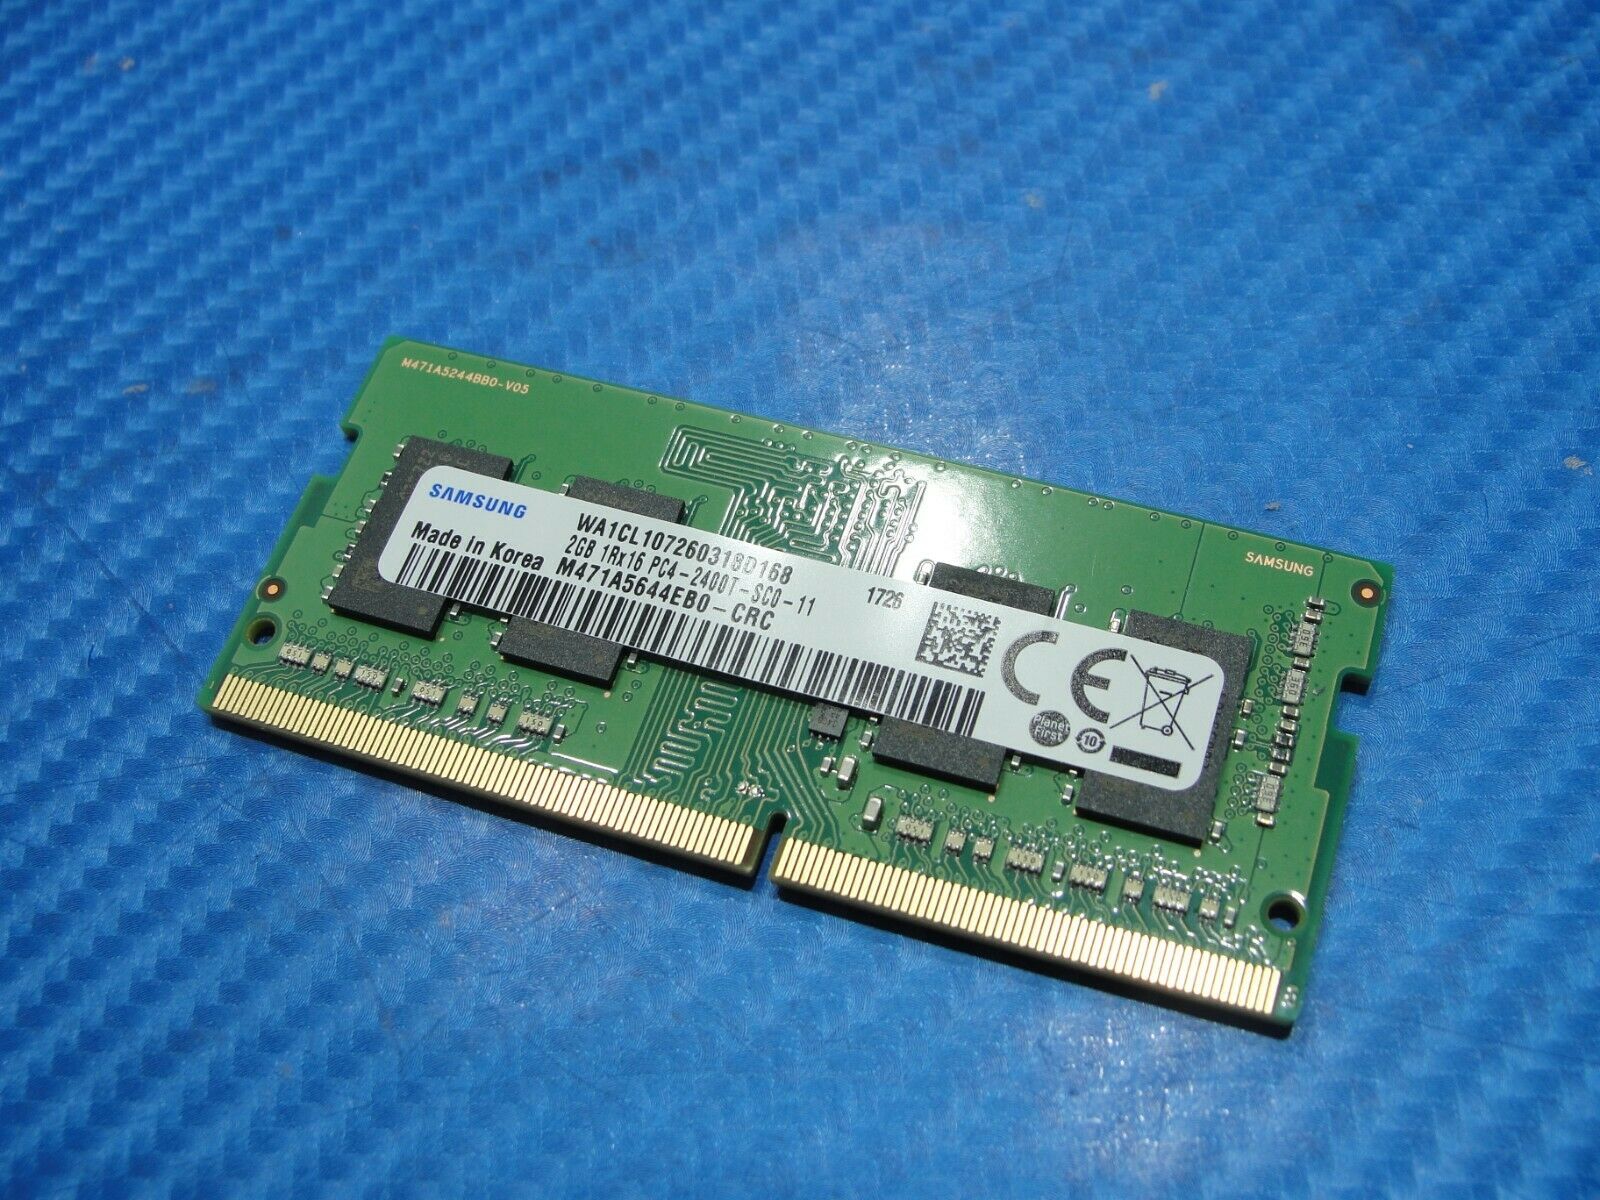 SAMSUNG 4GB 1Rx16 PC4-2400T-SCO-11, DDR4